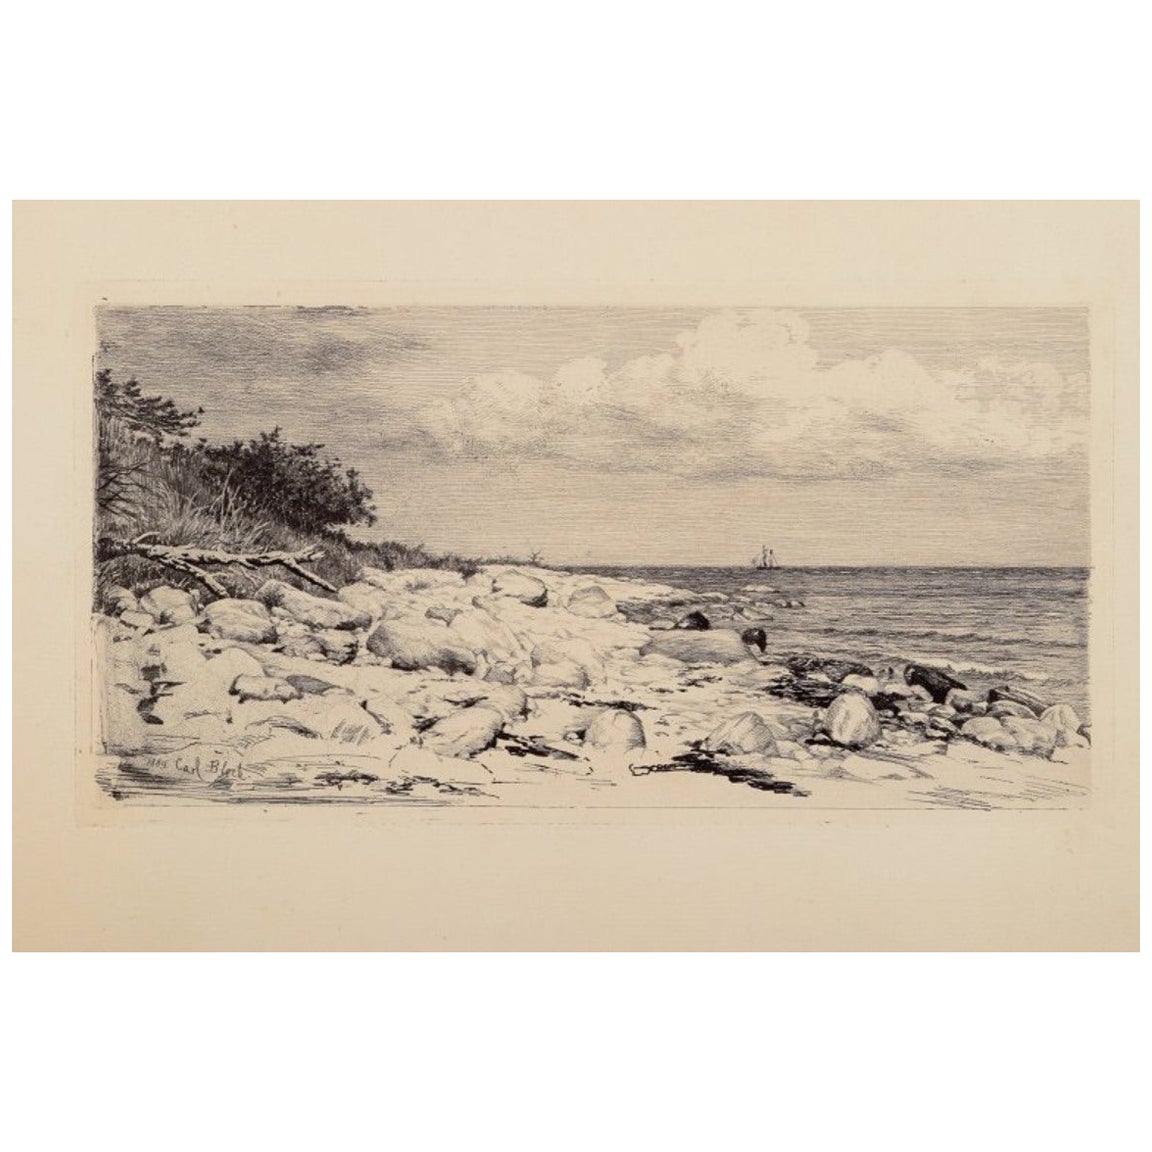 Carl Bloch (1834-1890). Gravure sur papier. Paysage côtier danois